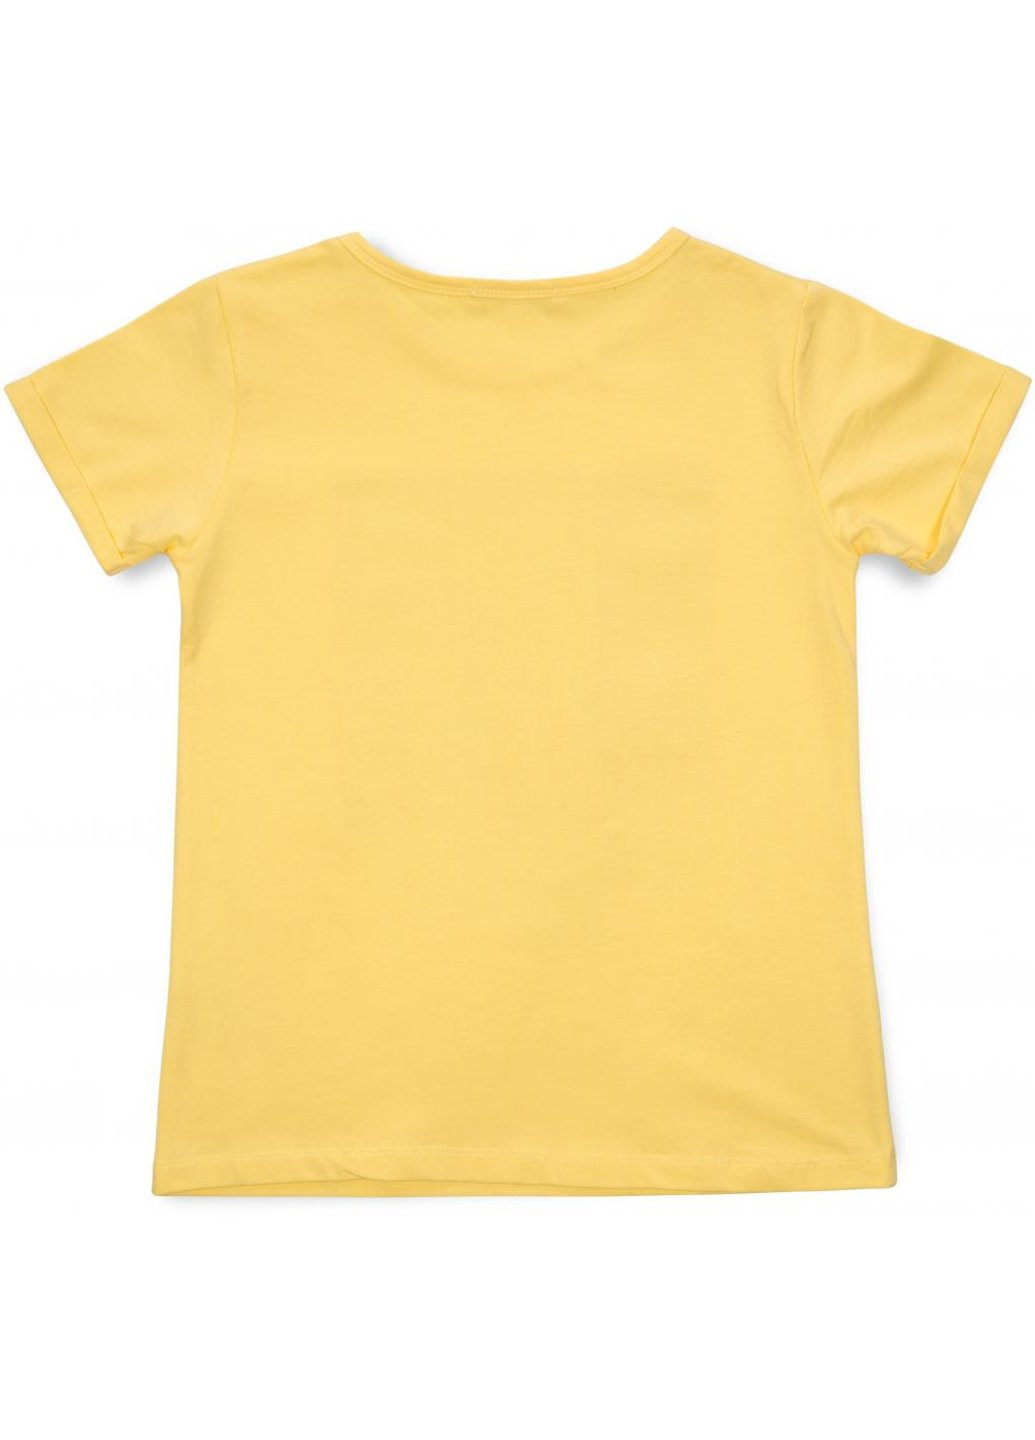 Комбинированная футболка детская с цветочками (15737-152g-yellow) Breeze